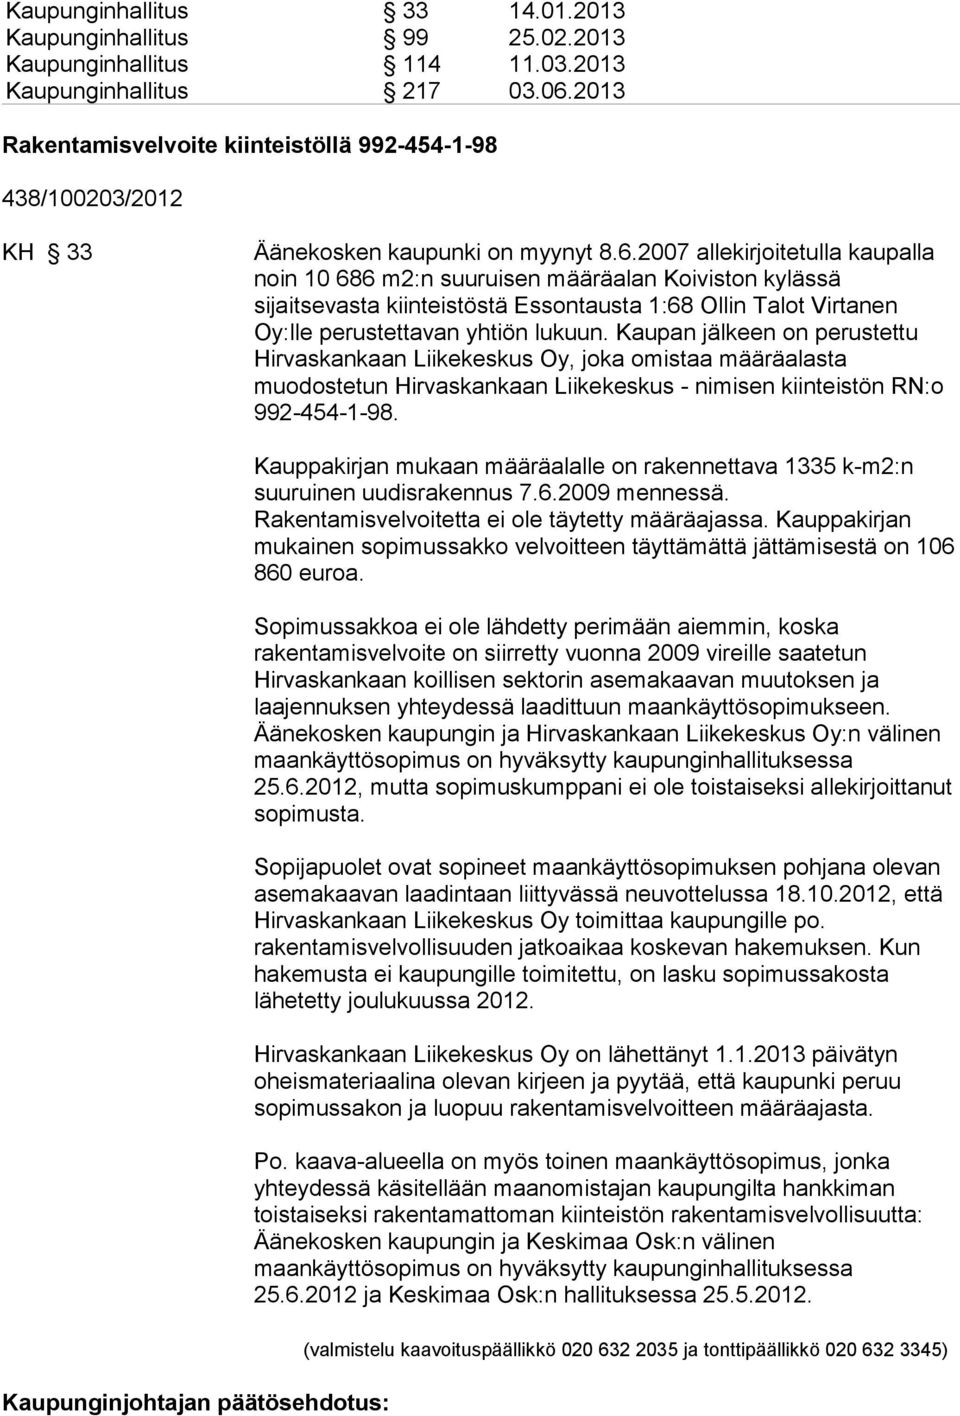 2007 allekirjoitetulla kaupalla noin 10 686 m2:n suuruisen määräalan Koiviston kylässä sijaitsevasta kiinteistöstä Essontausta 1:68 Ollin Talot Virtanen Oy:lle perustettavan yhtiön lukuun.